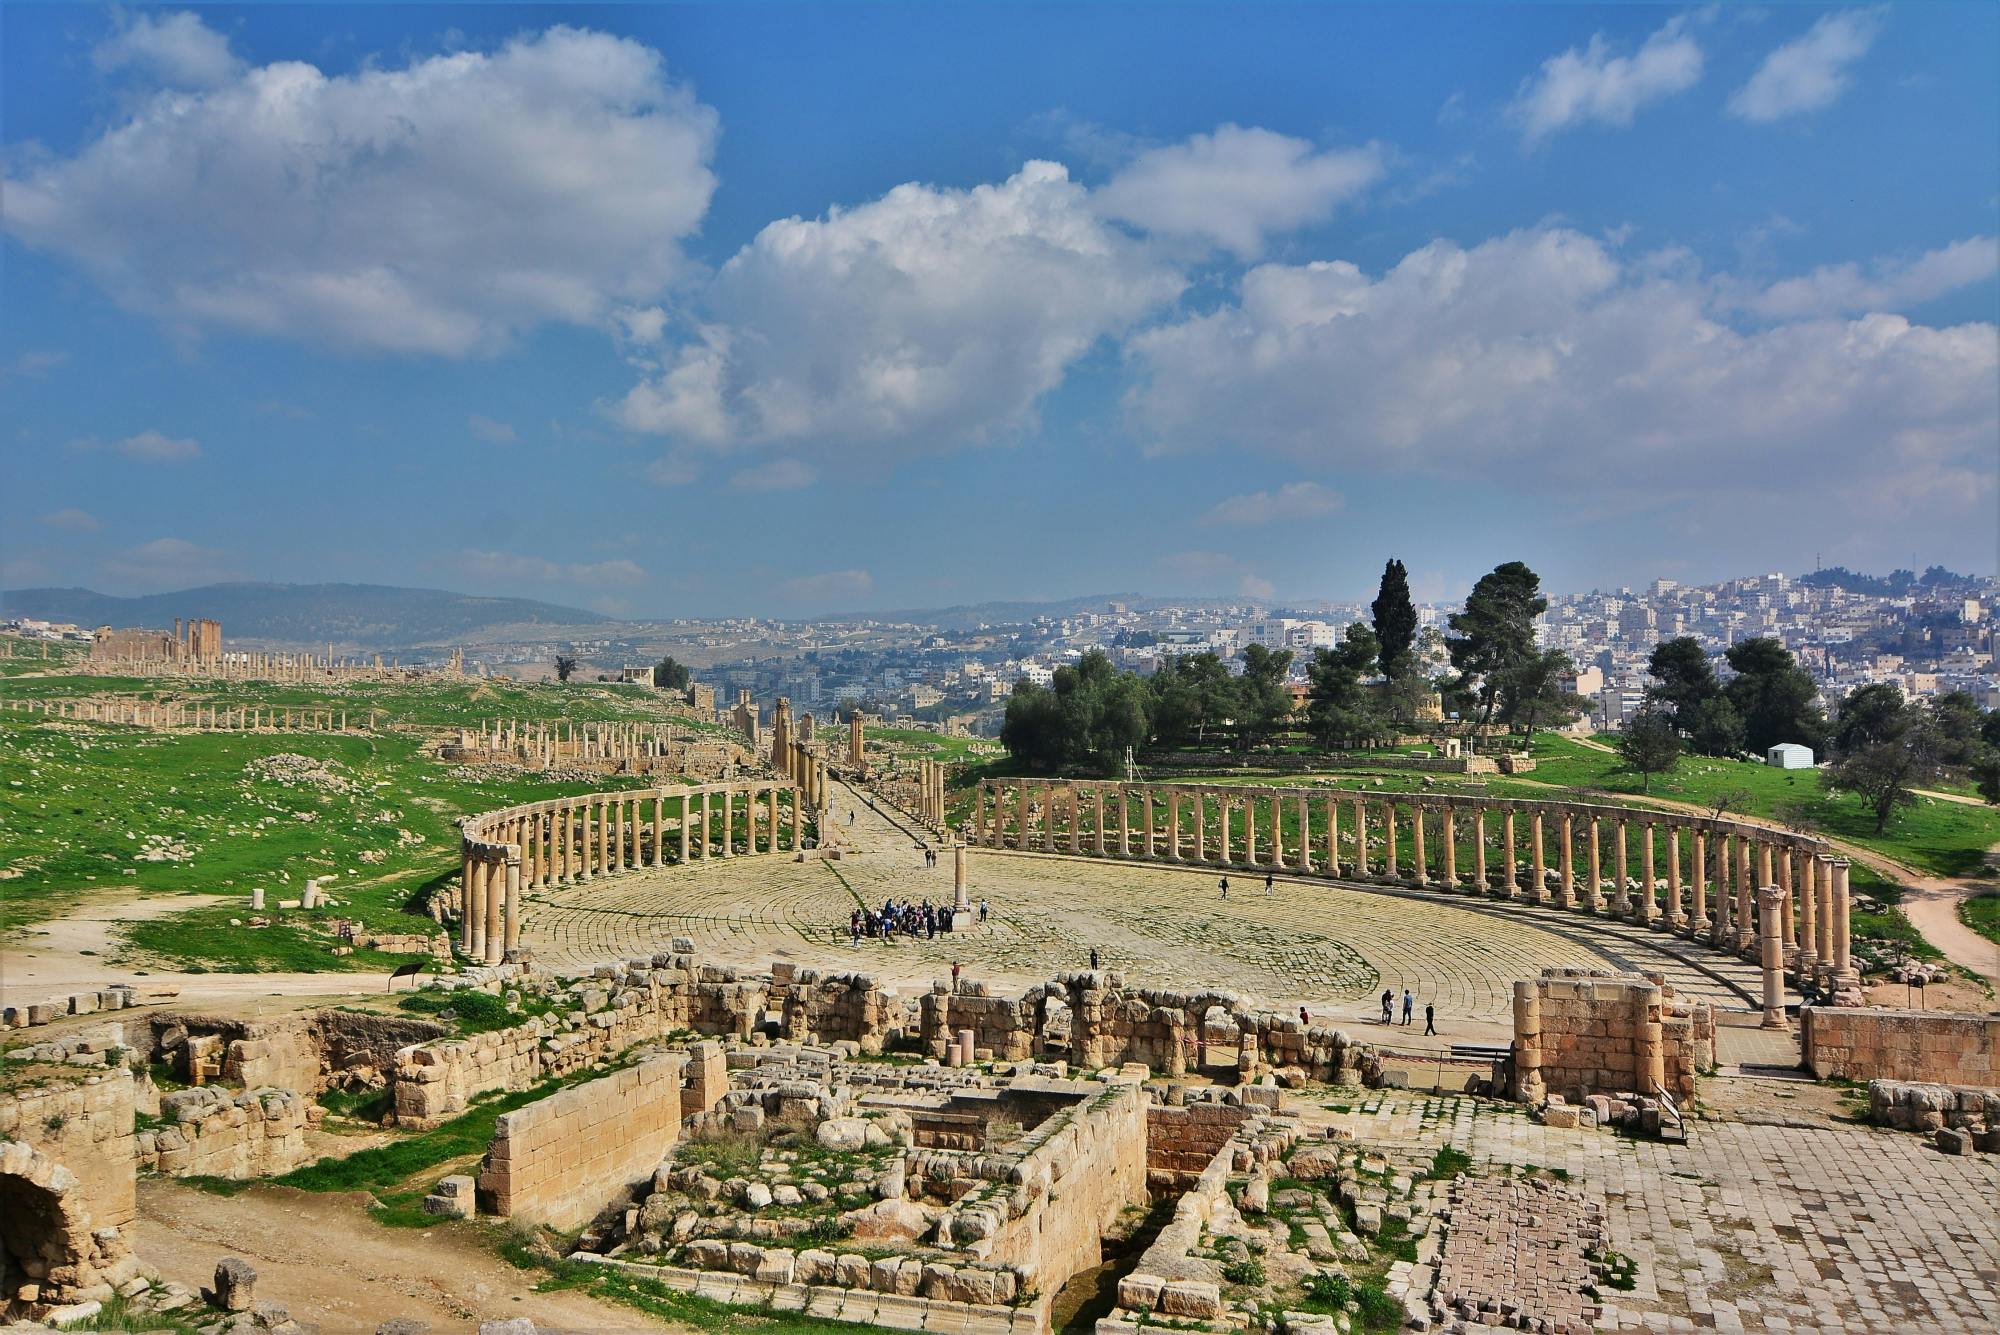 Excursão pela cidade de Amã com visita à antiga cidade de Jerash